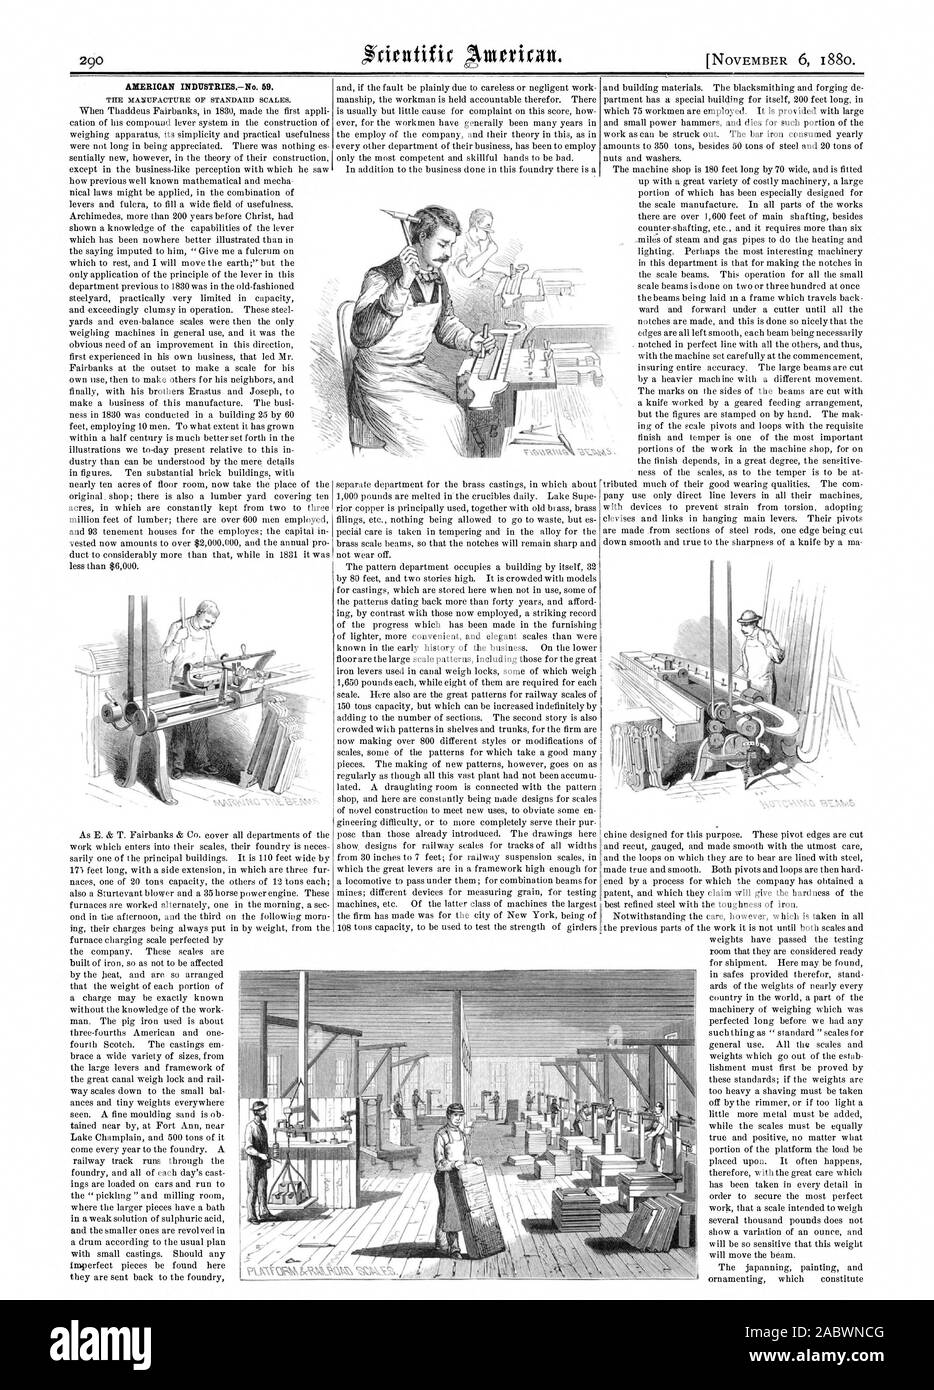 INDUSTRIESNo américain. 59. La FABRICATION DES ÉCHELLES STANDARD., Scientific American, 1880-11-06 Banque D'Images